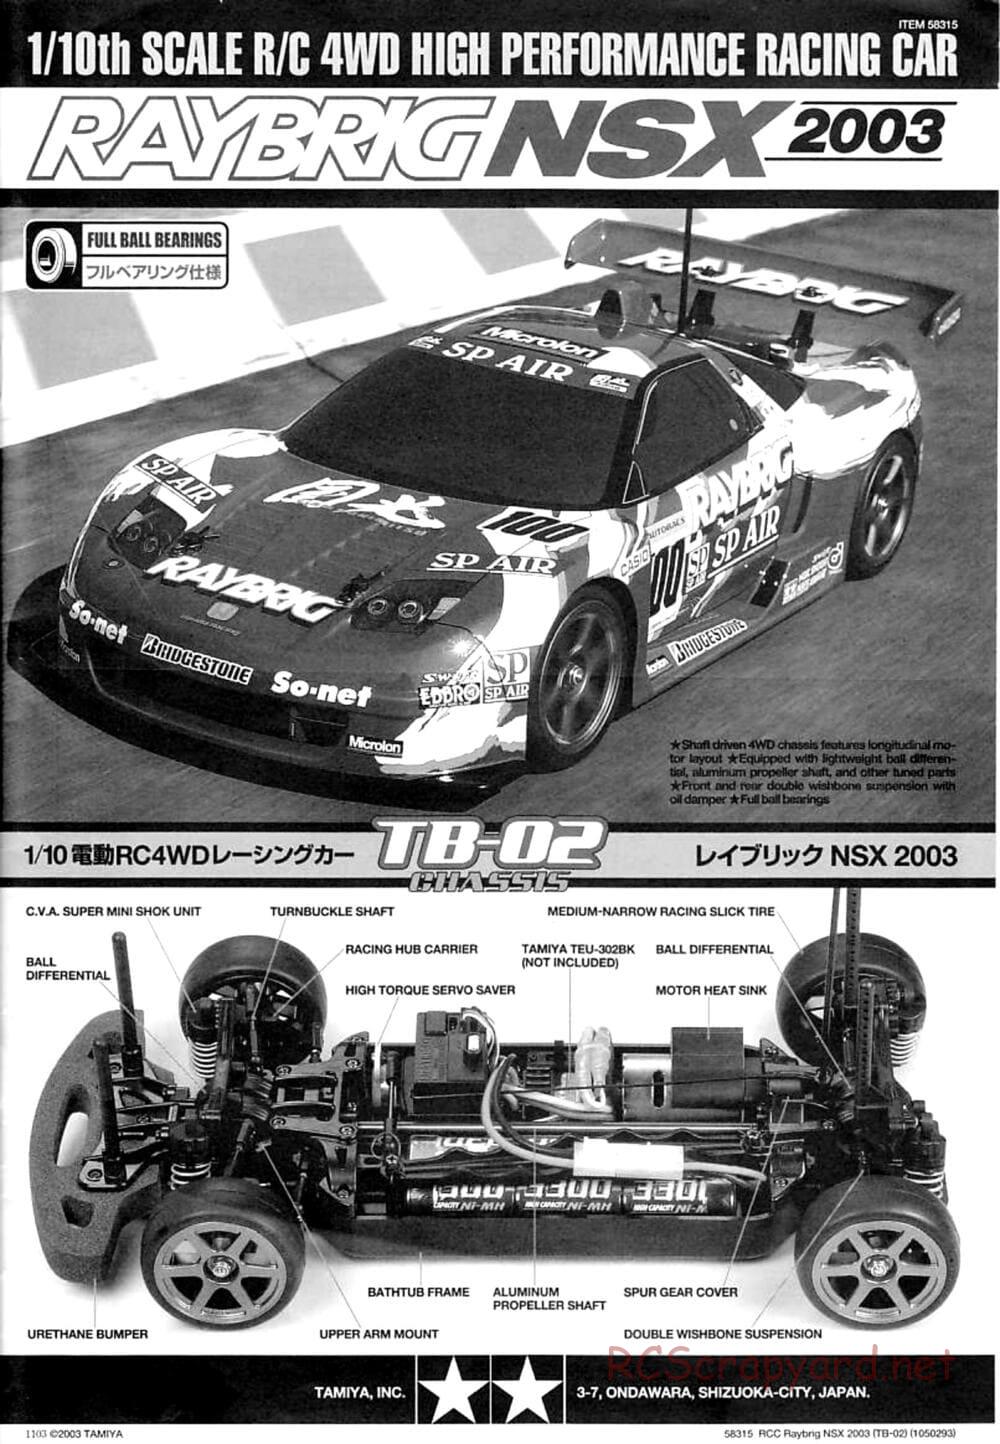 Tamiya - Raybrig NSX 2003 - TB-02 Chassis - Manual - Page 1